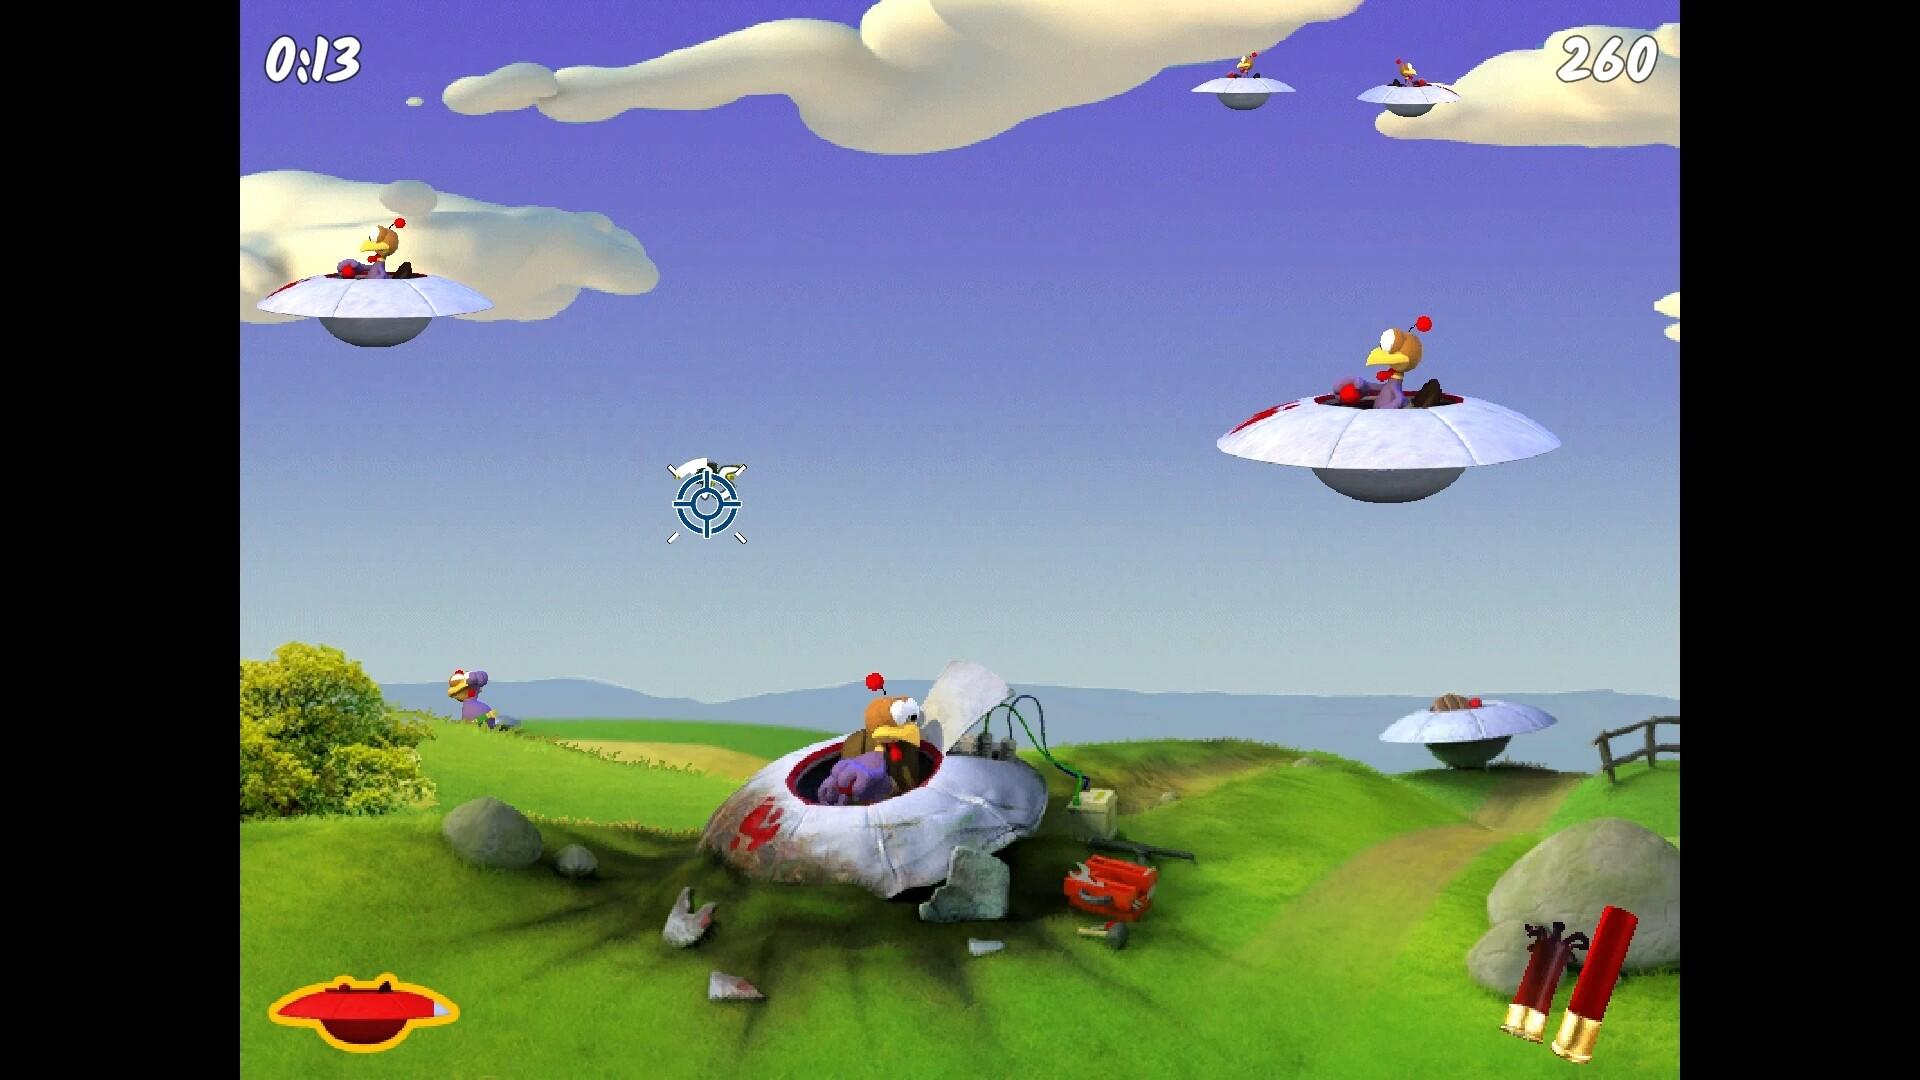 Moorhuhn Invasion - Crazy Chicken Invasion screenshot game